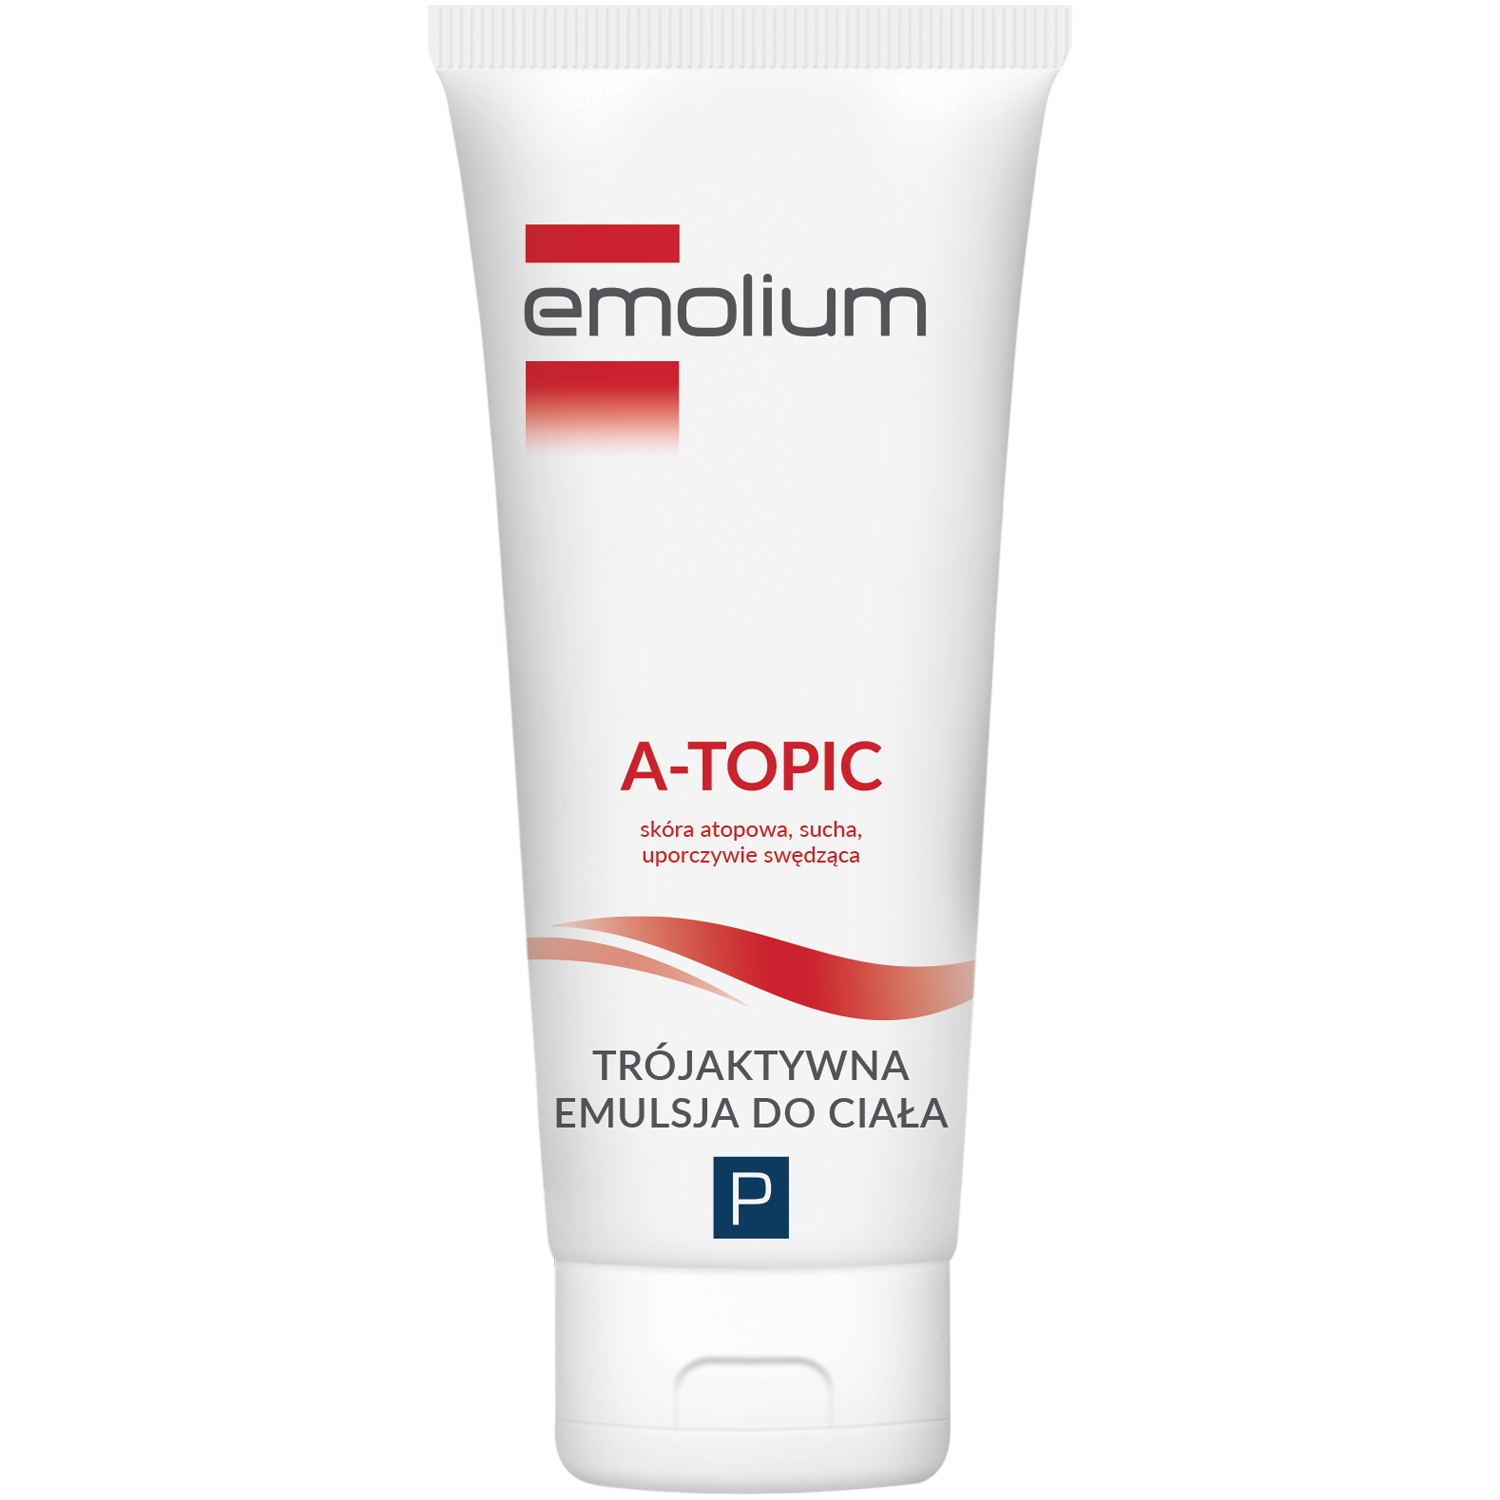 Emolium A-Topic триактивная эмульсия для тела для детей, 200 мл